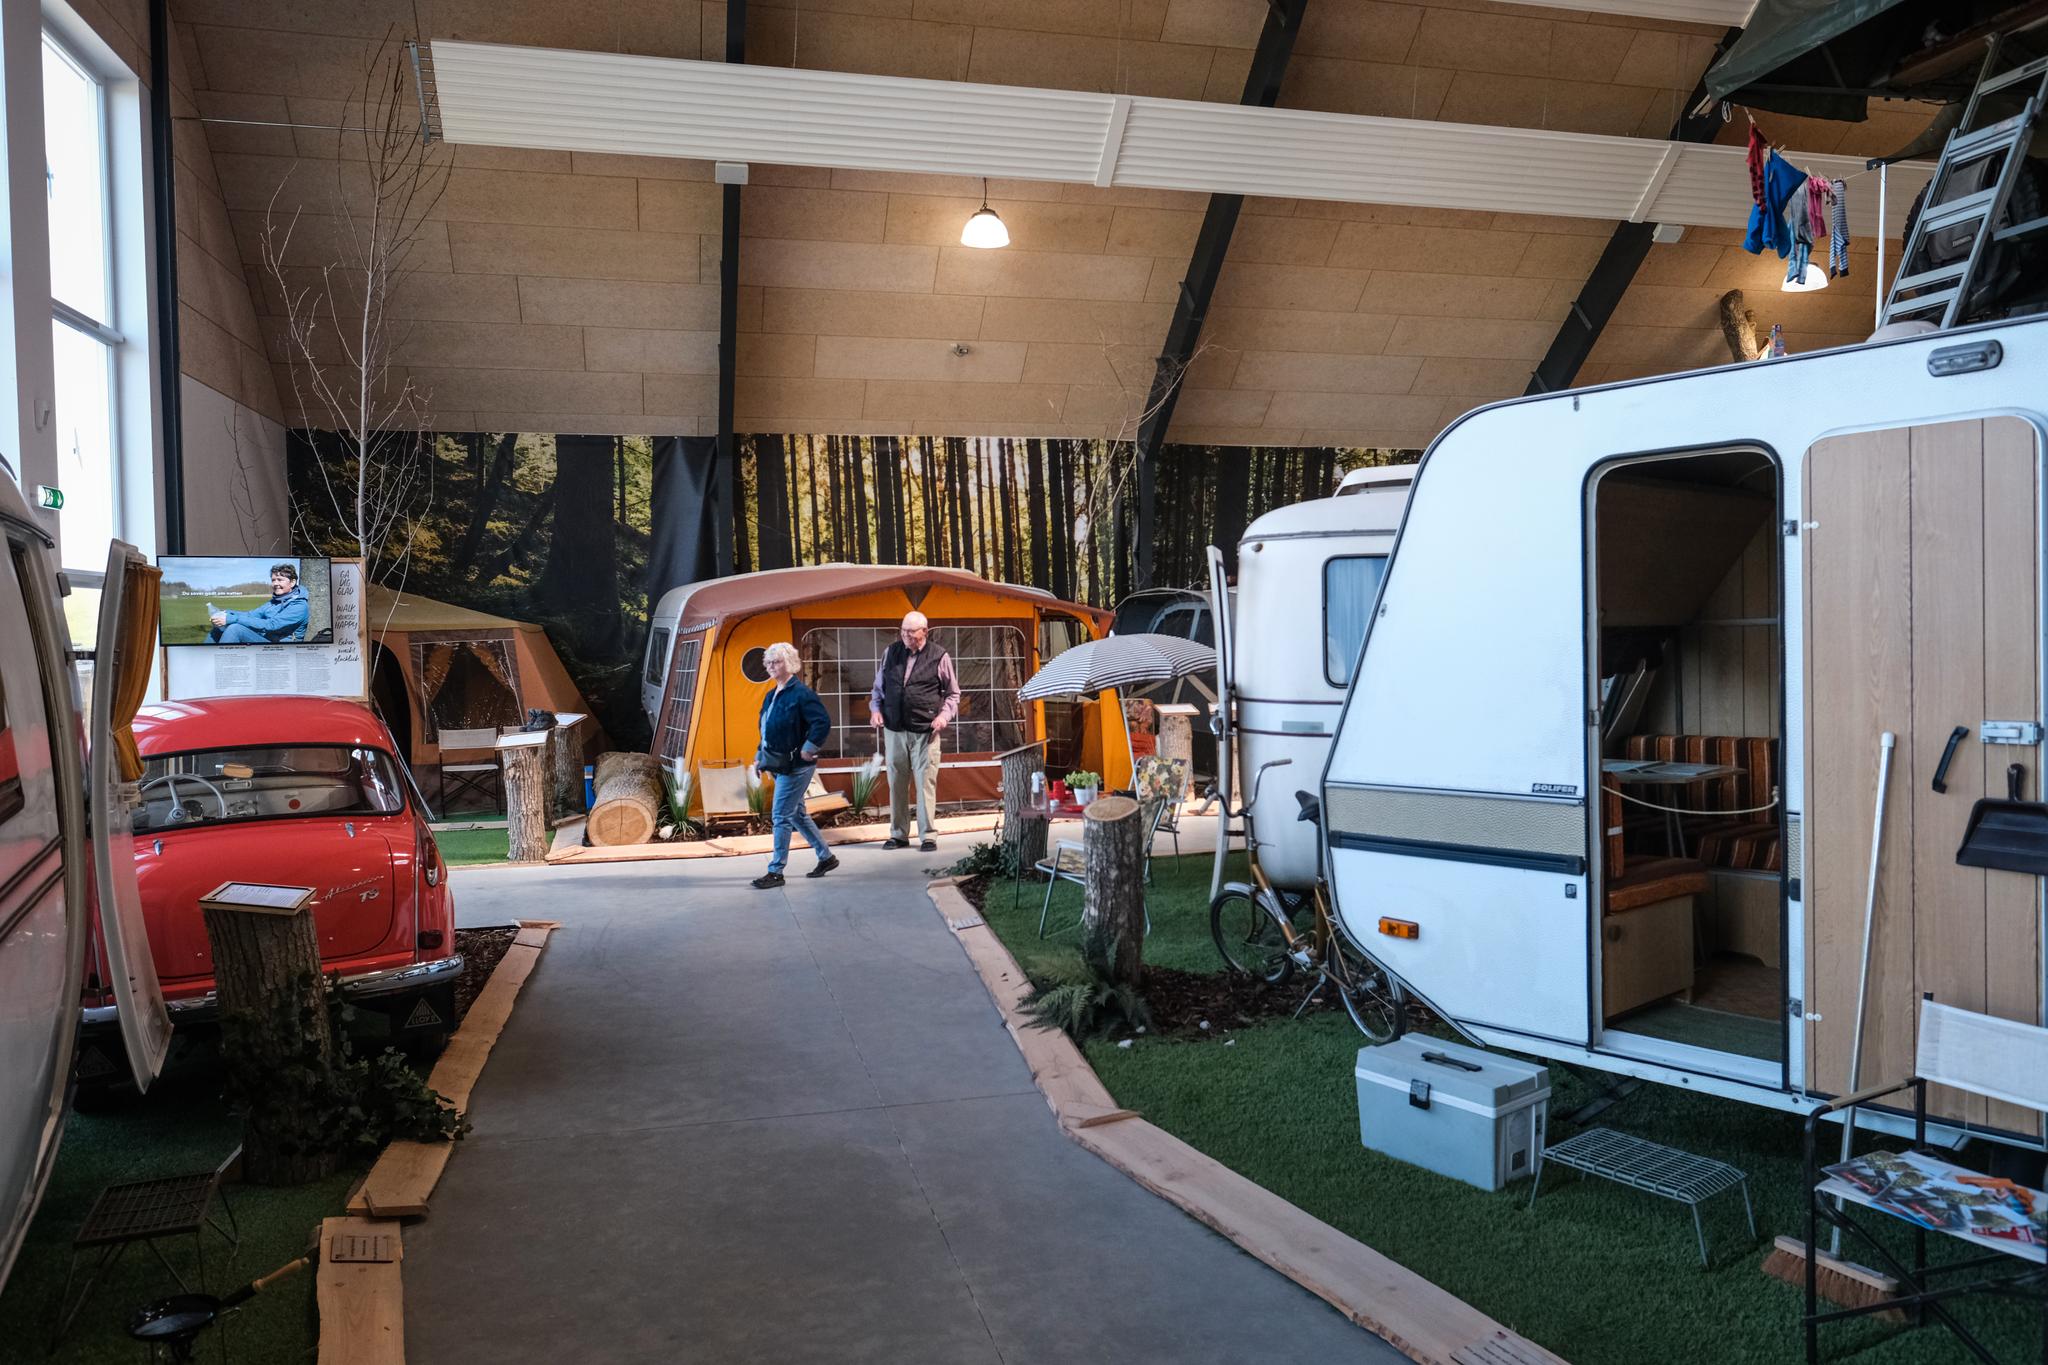 I 2022 åpner Europas første campingmuseum på Egeskov slott. Samlingen består av både historisk og nytt campingutstyr. 